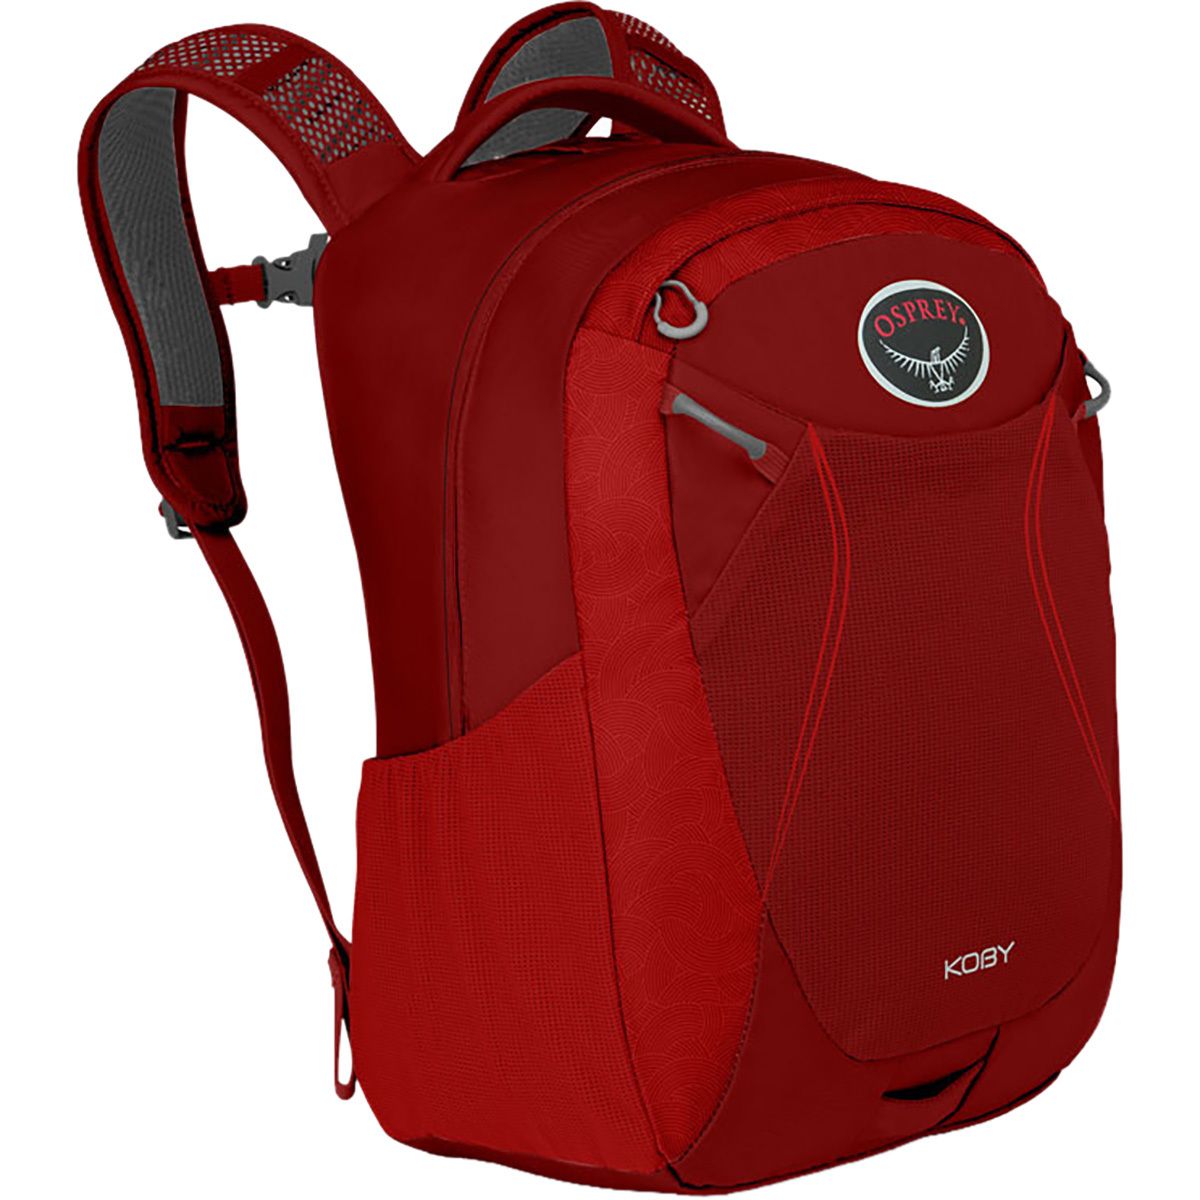 Osprey Packs Koby Backpack - Kids' - 1220cu in Racing Red, 